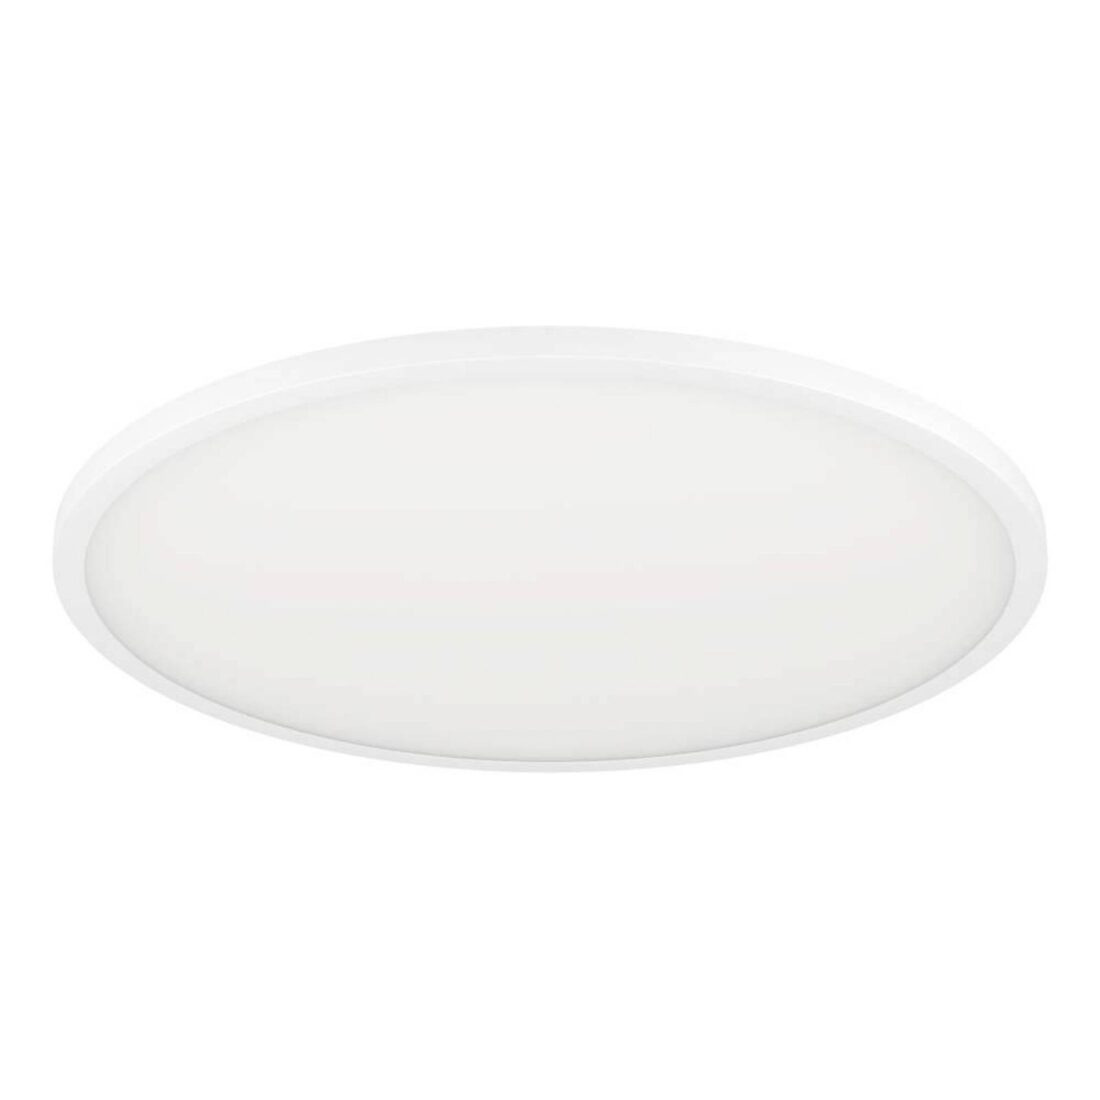 EGLO connect Sarsina-Z stropní svítidlo bílé Ø60cm